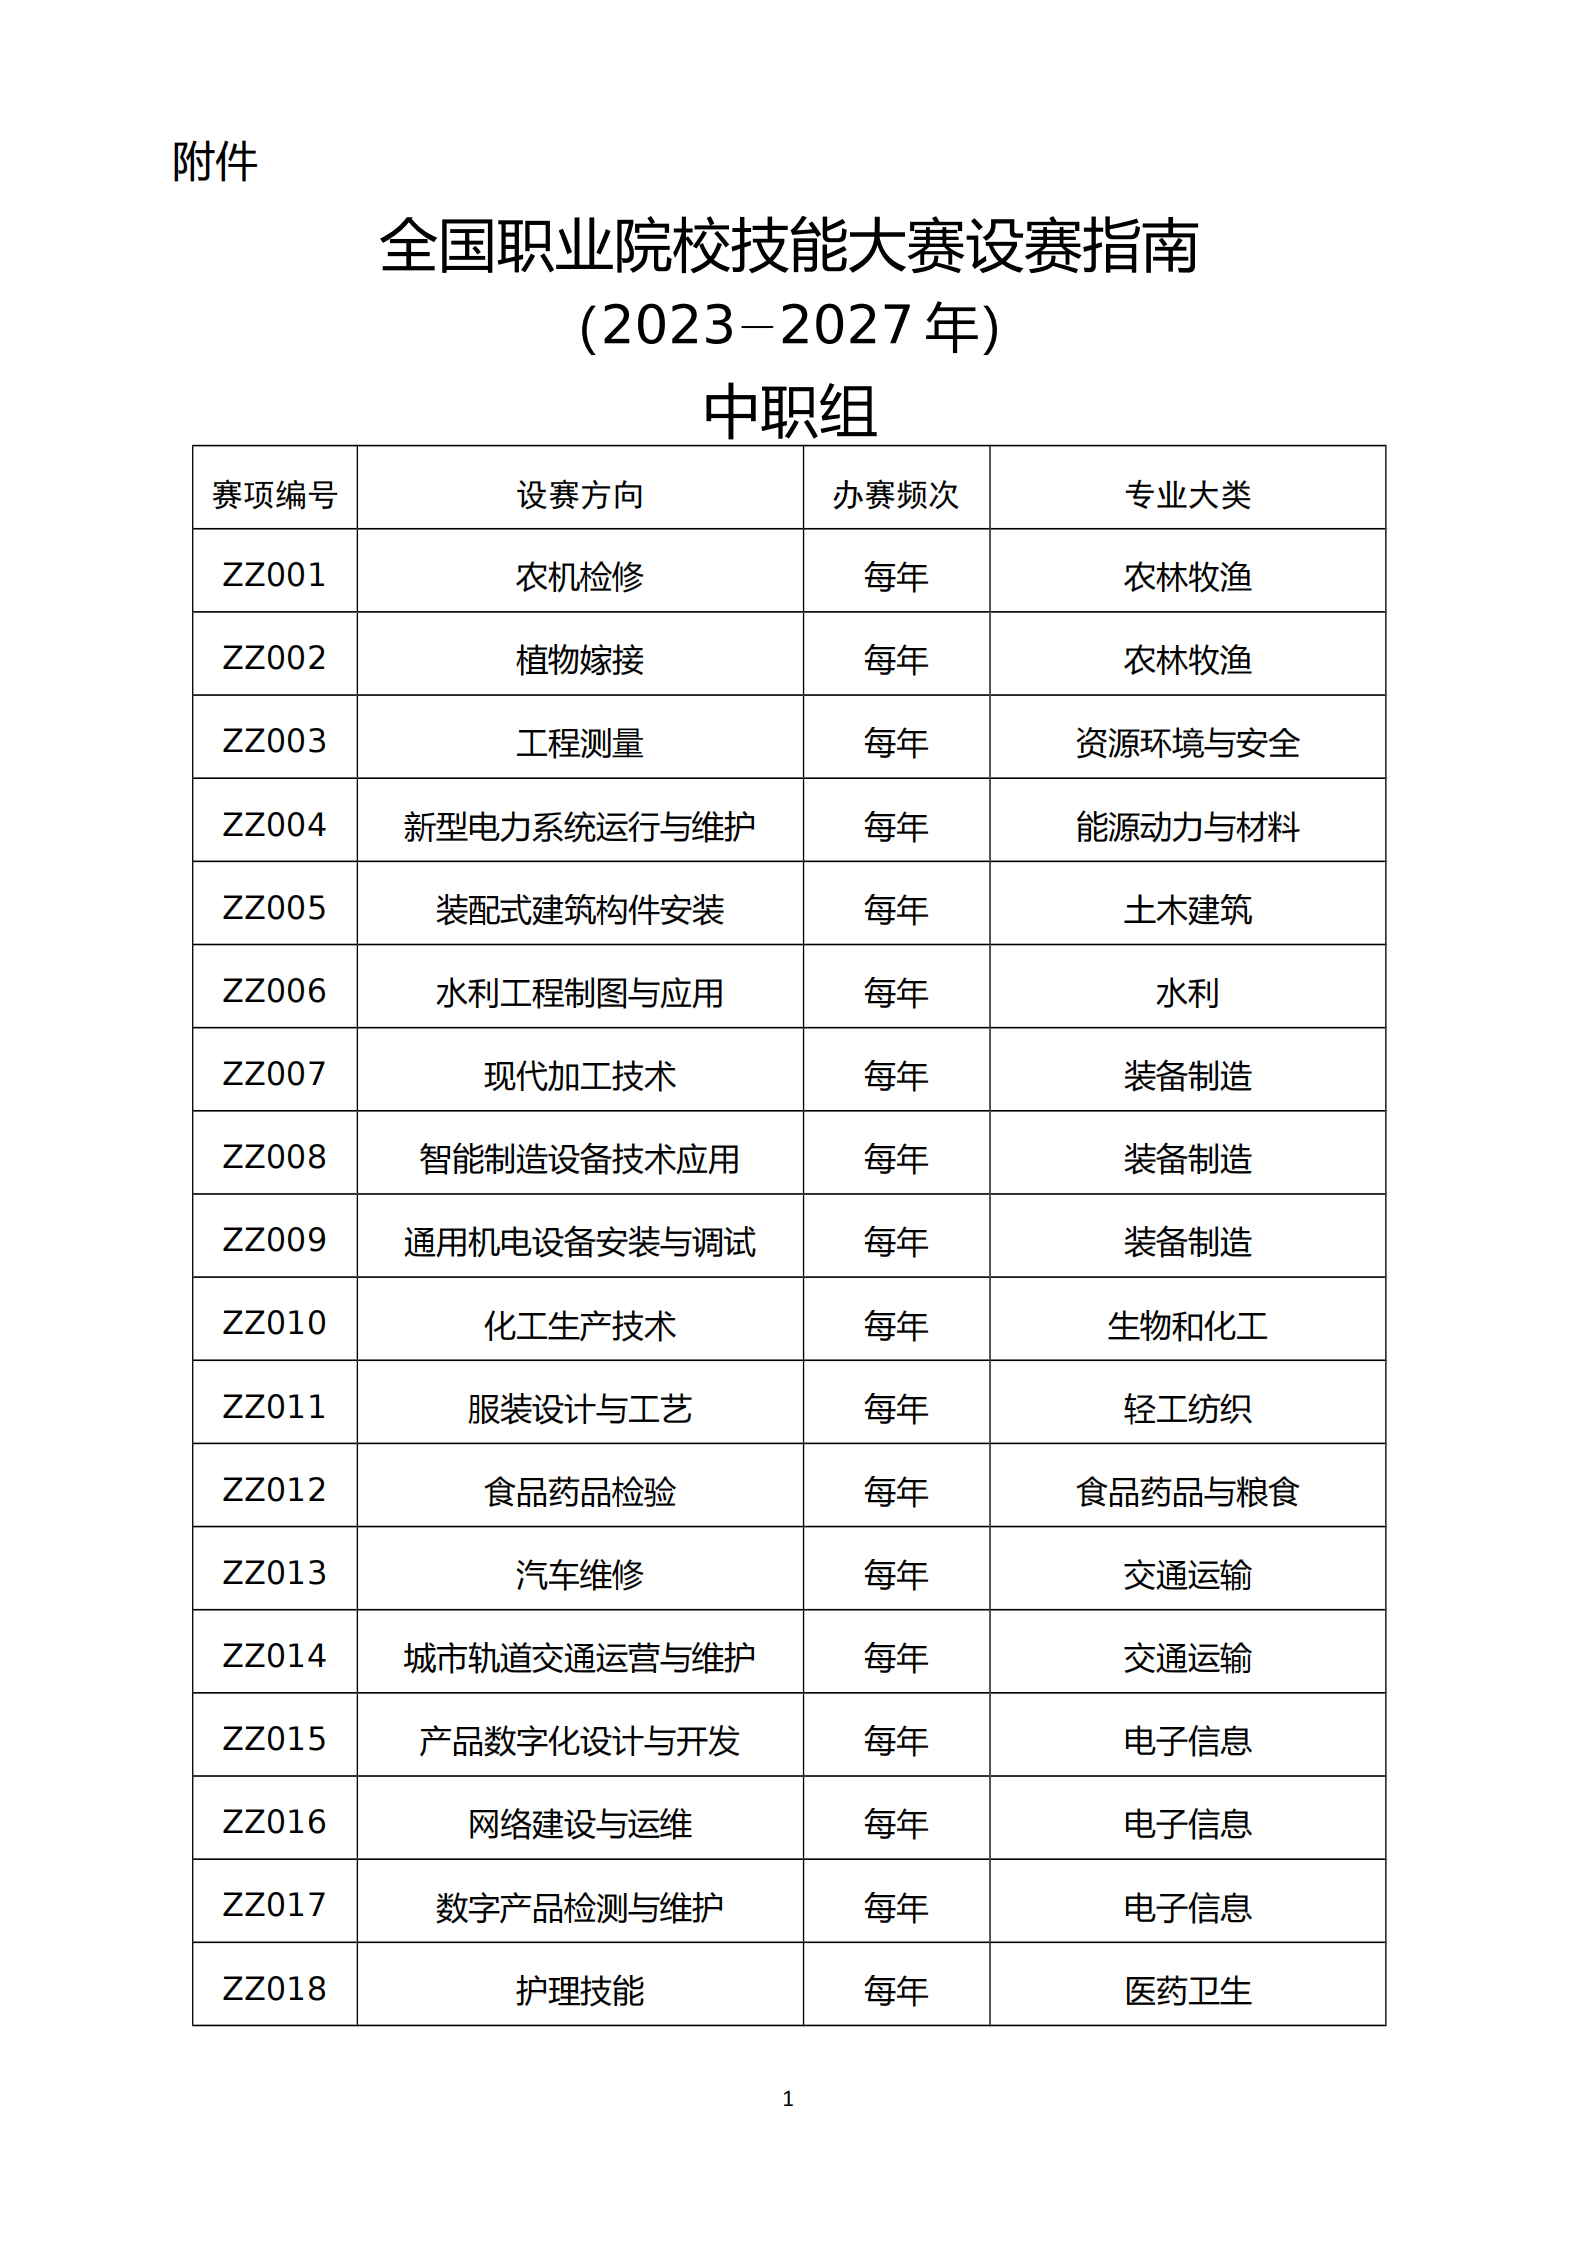 重庆市环境技术评估专家库名单（截至2022年12月31日）_重庆市生态环境局